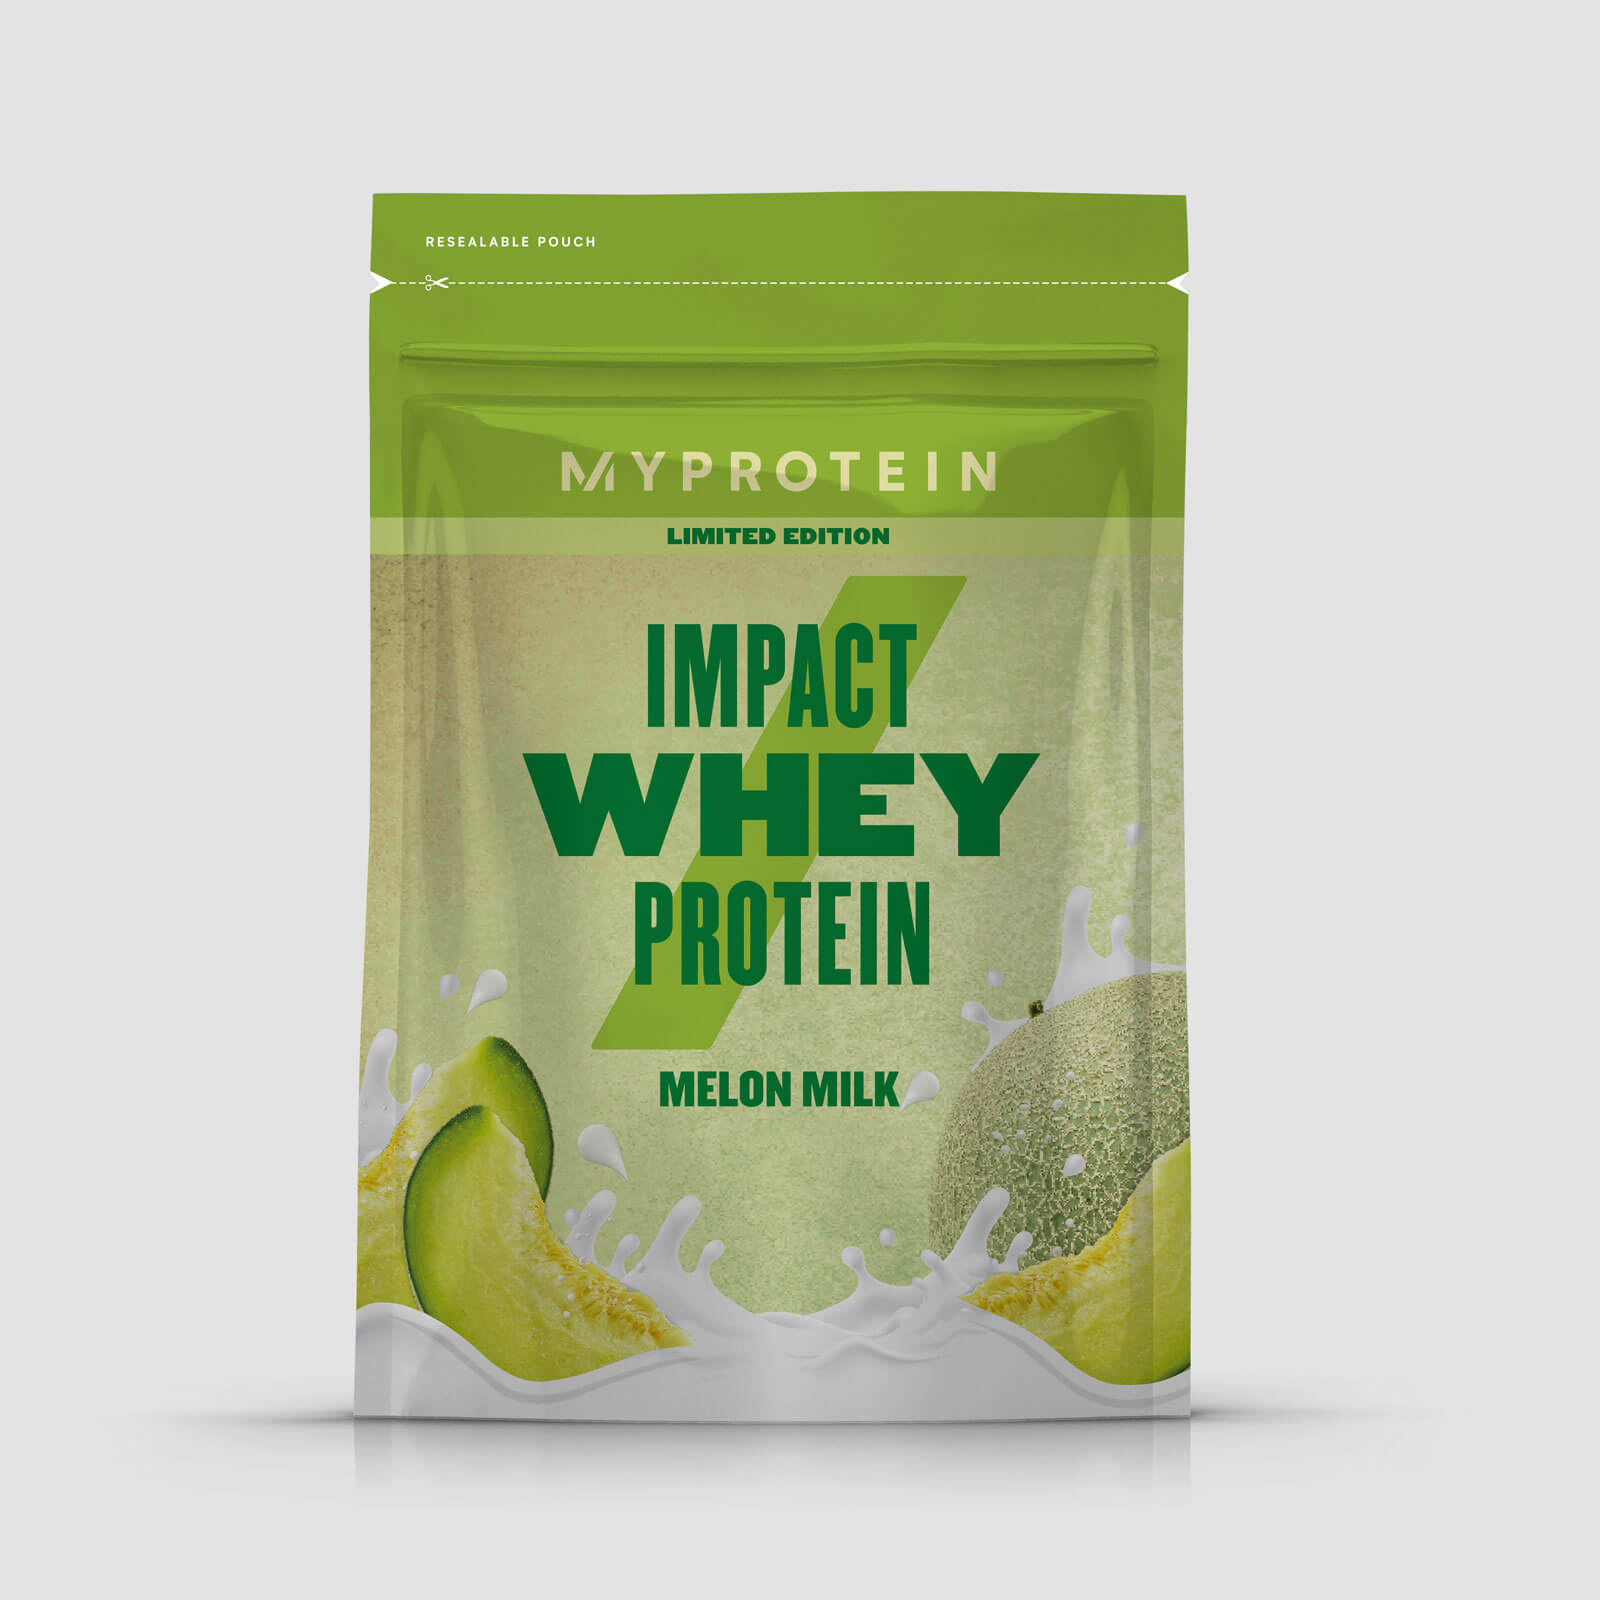 Myprotein Impact Whey Protein, Melon Milk, 250g